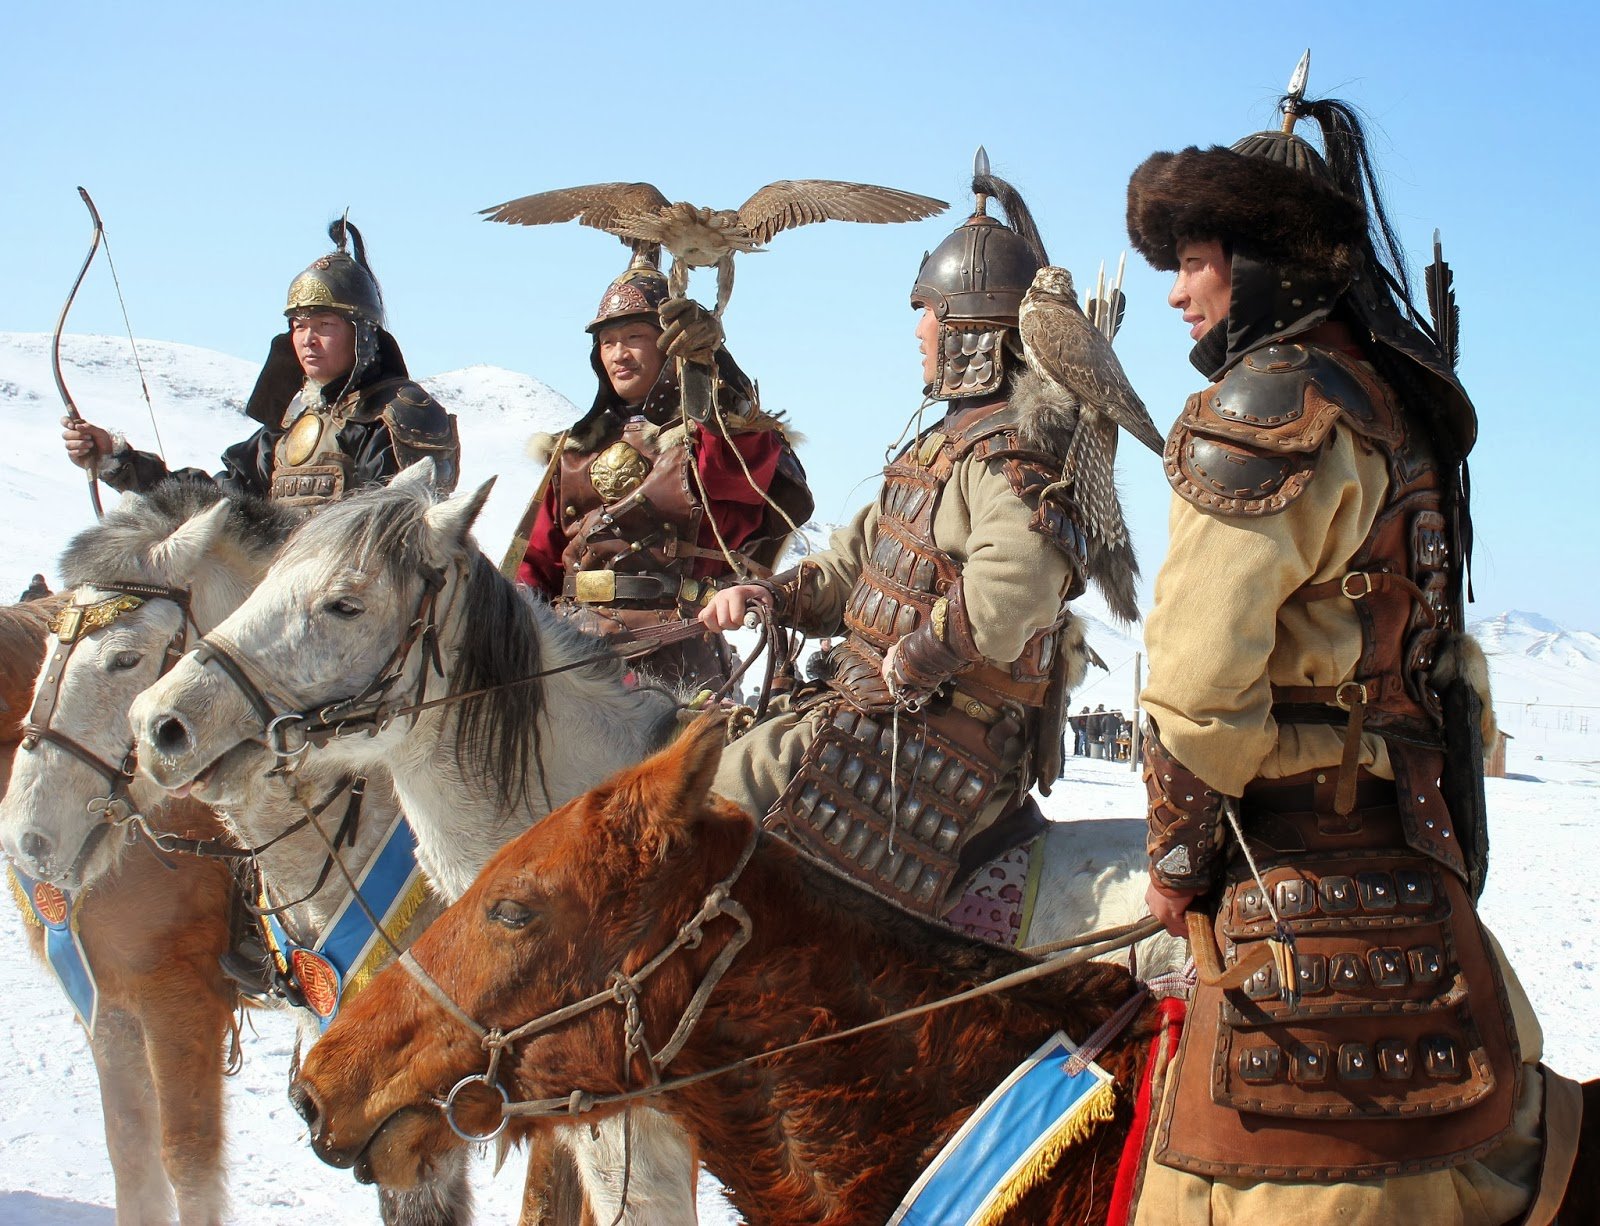 Mongolian archers